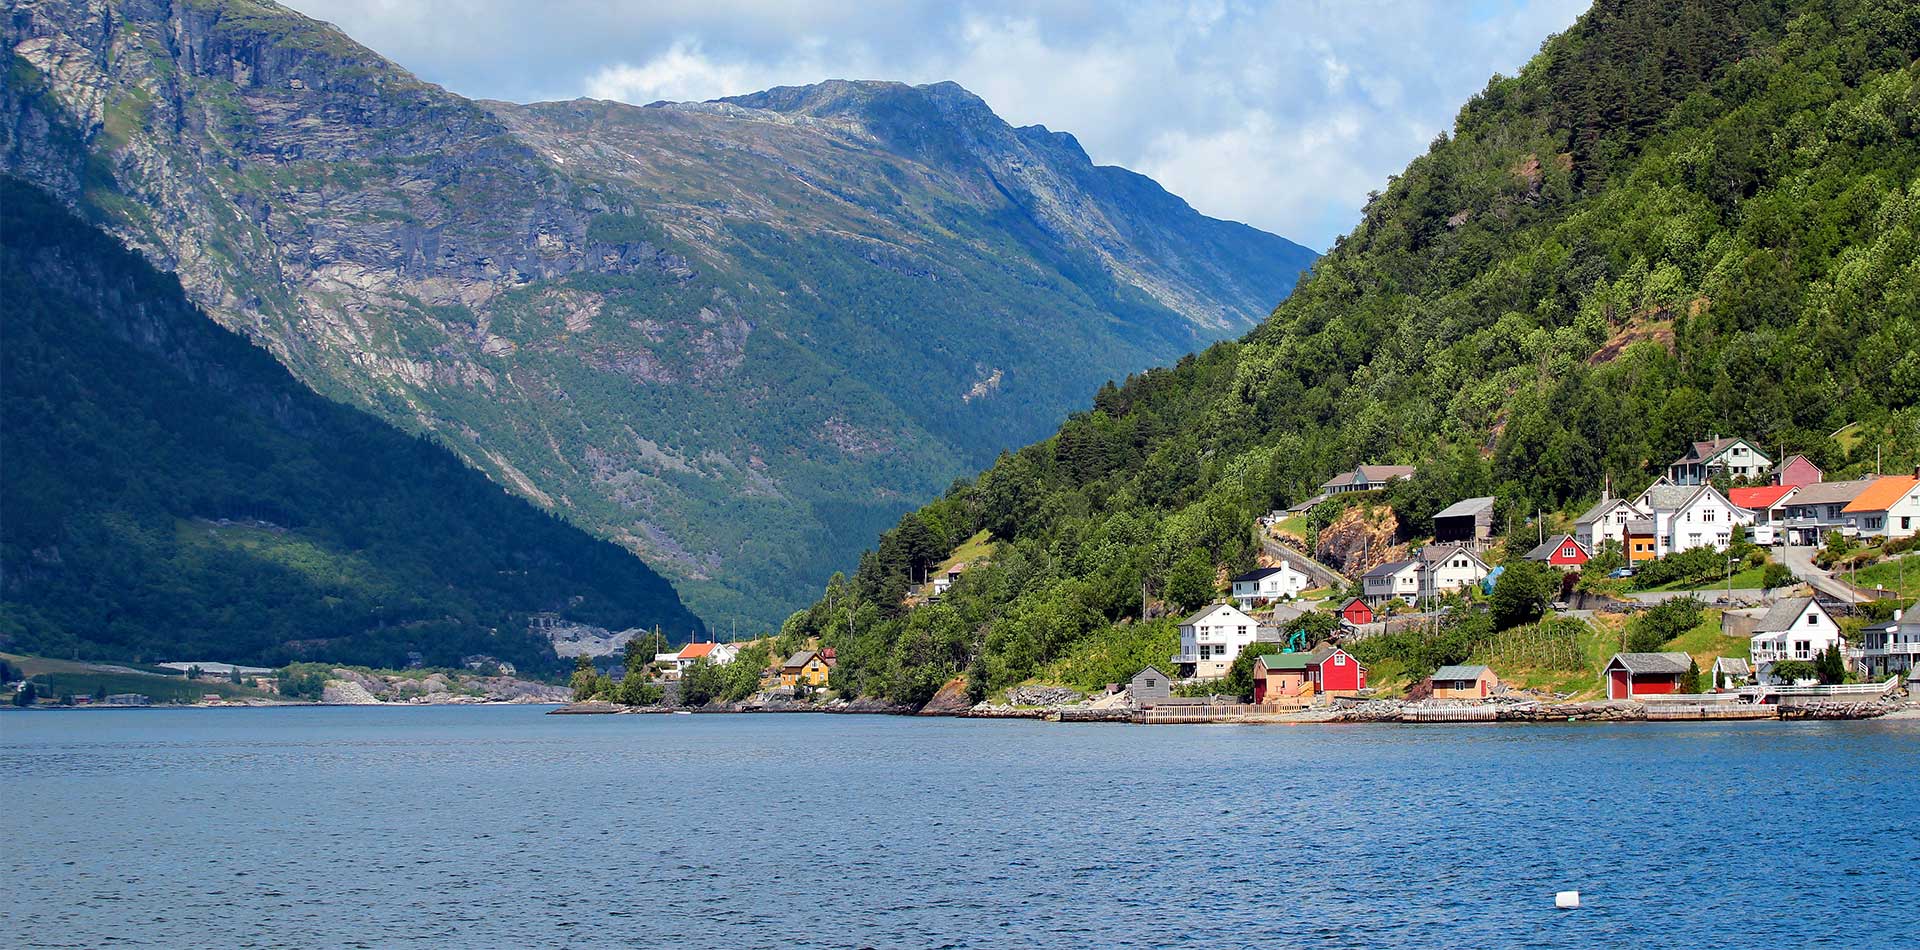 View of Hardangerfjord, Norway